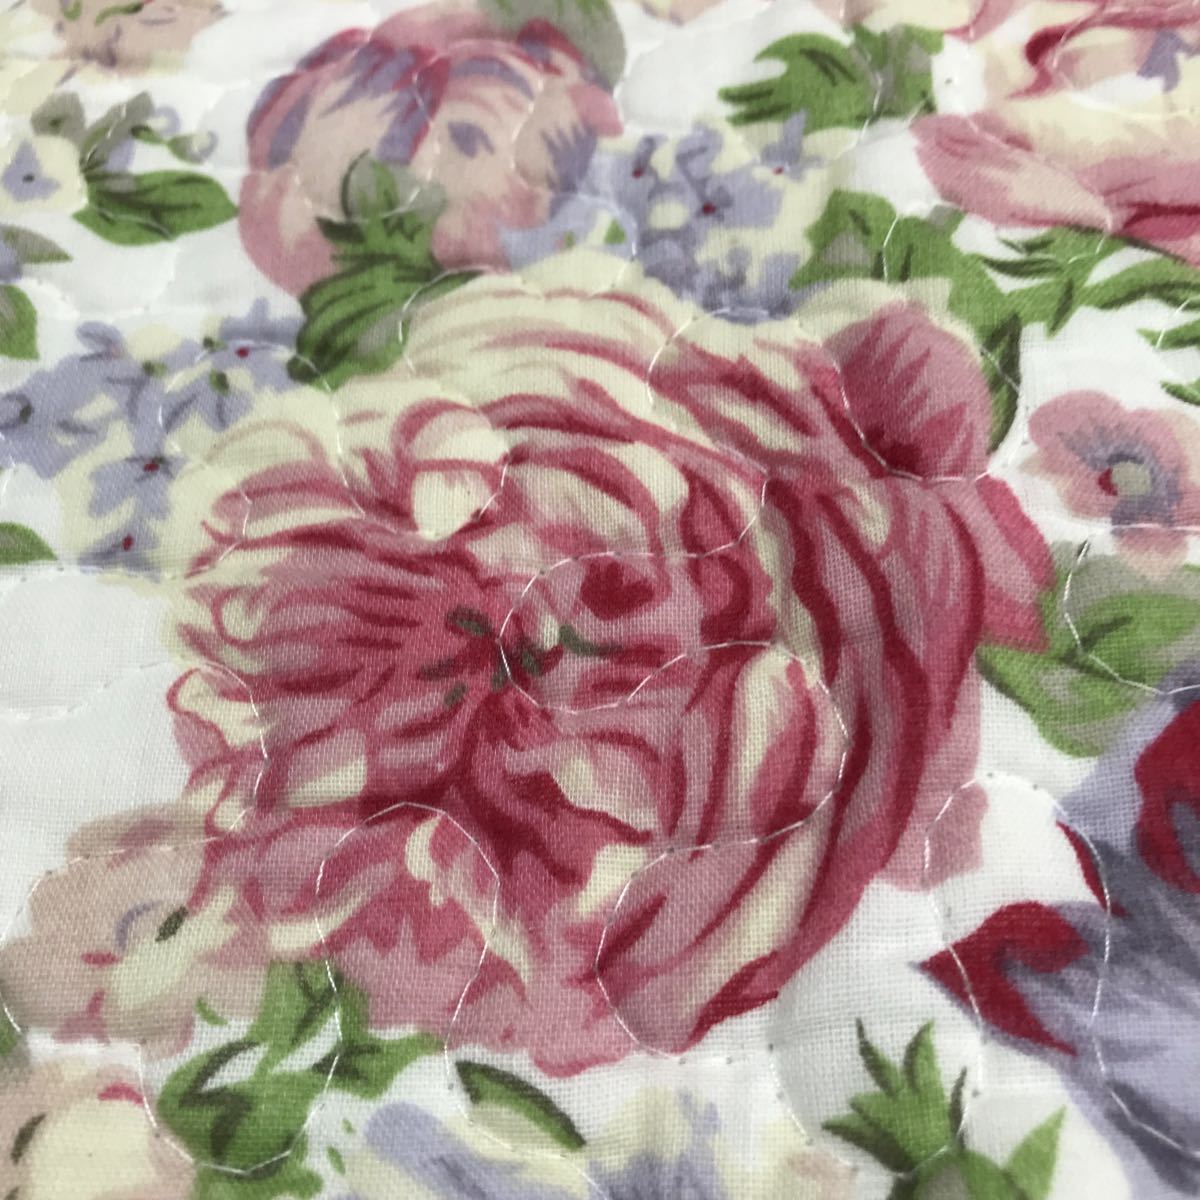  новый товар чехол на подушку для сидения стеганый ткань роза рисунок хлопок 100% 55×59... штамп клик post 